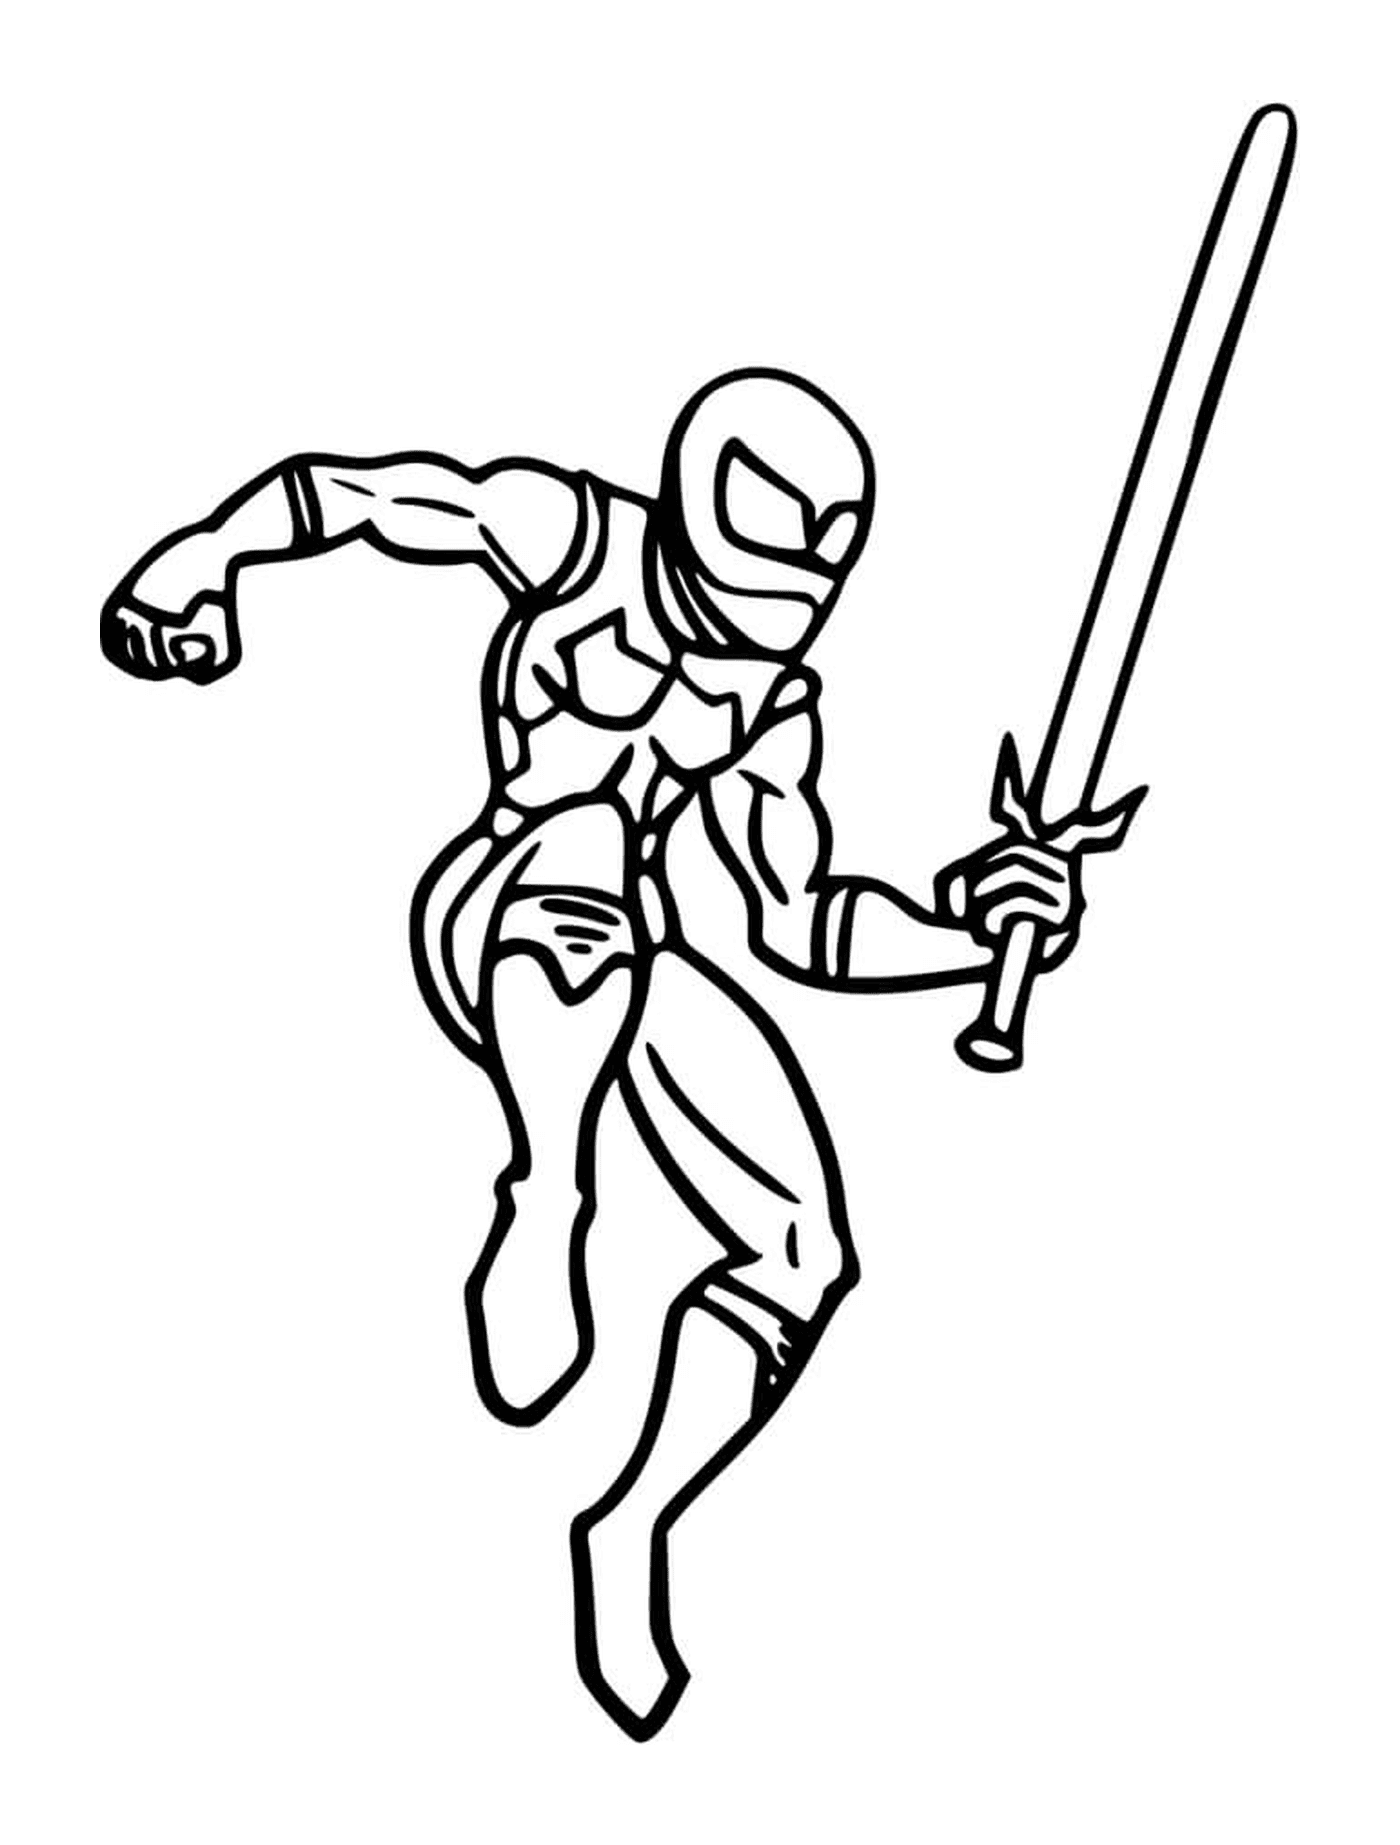  Ninja com uma espada 